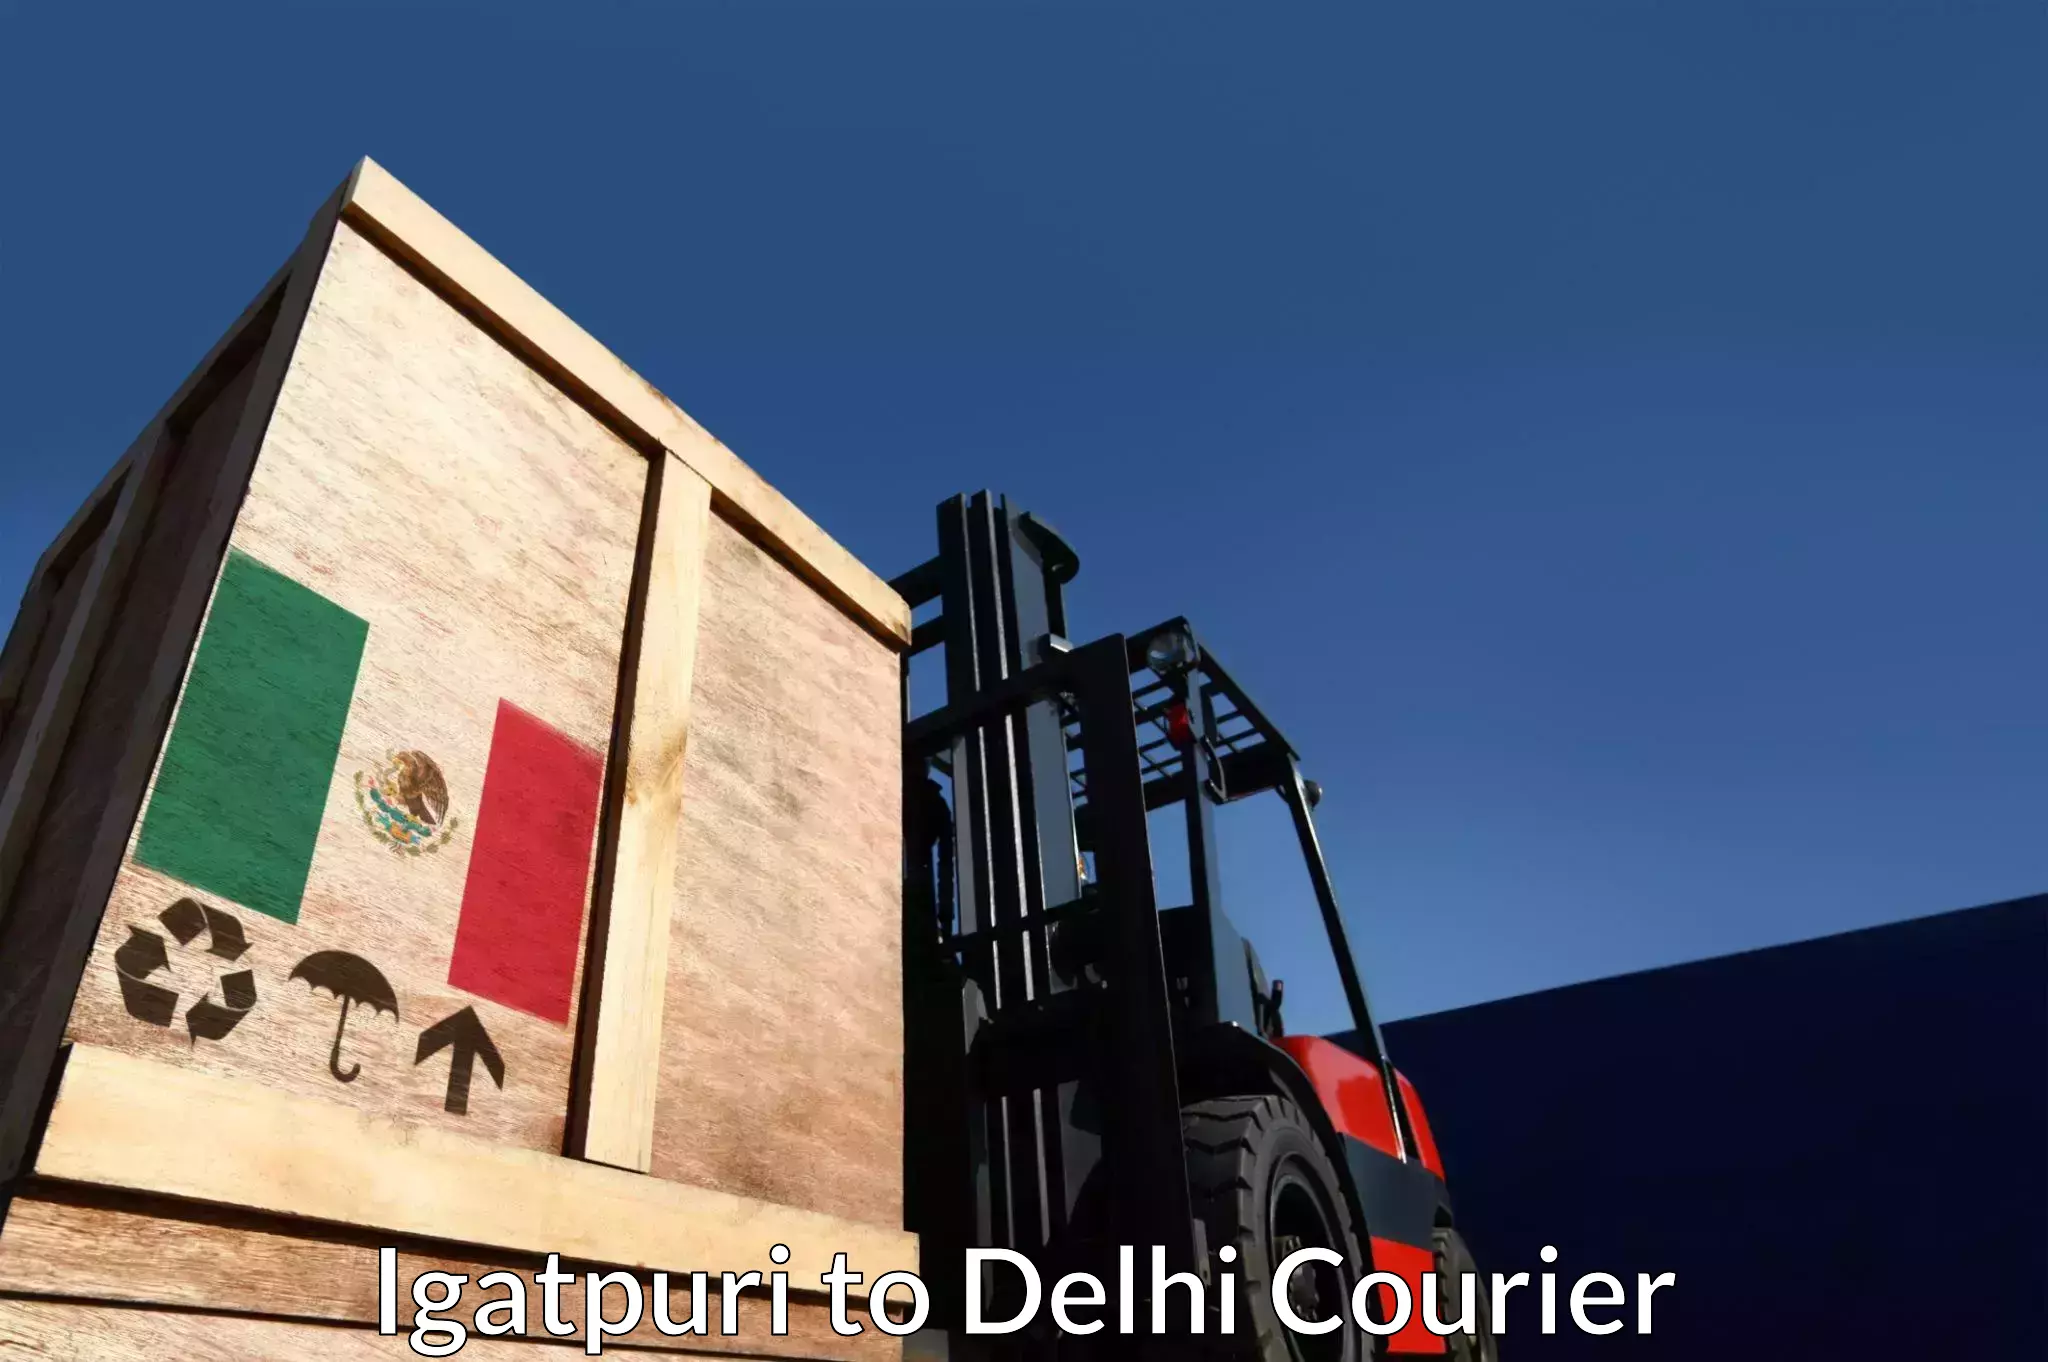 Courier service comparison Igatpuri to Jamia Millia Islamia New Delhi